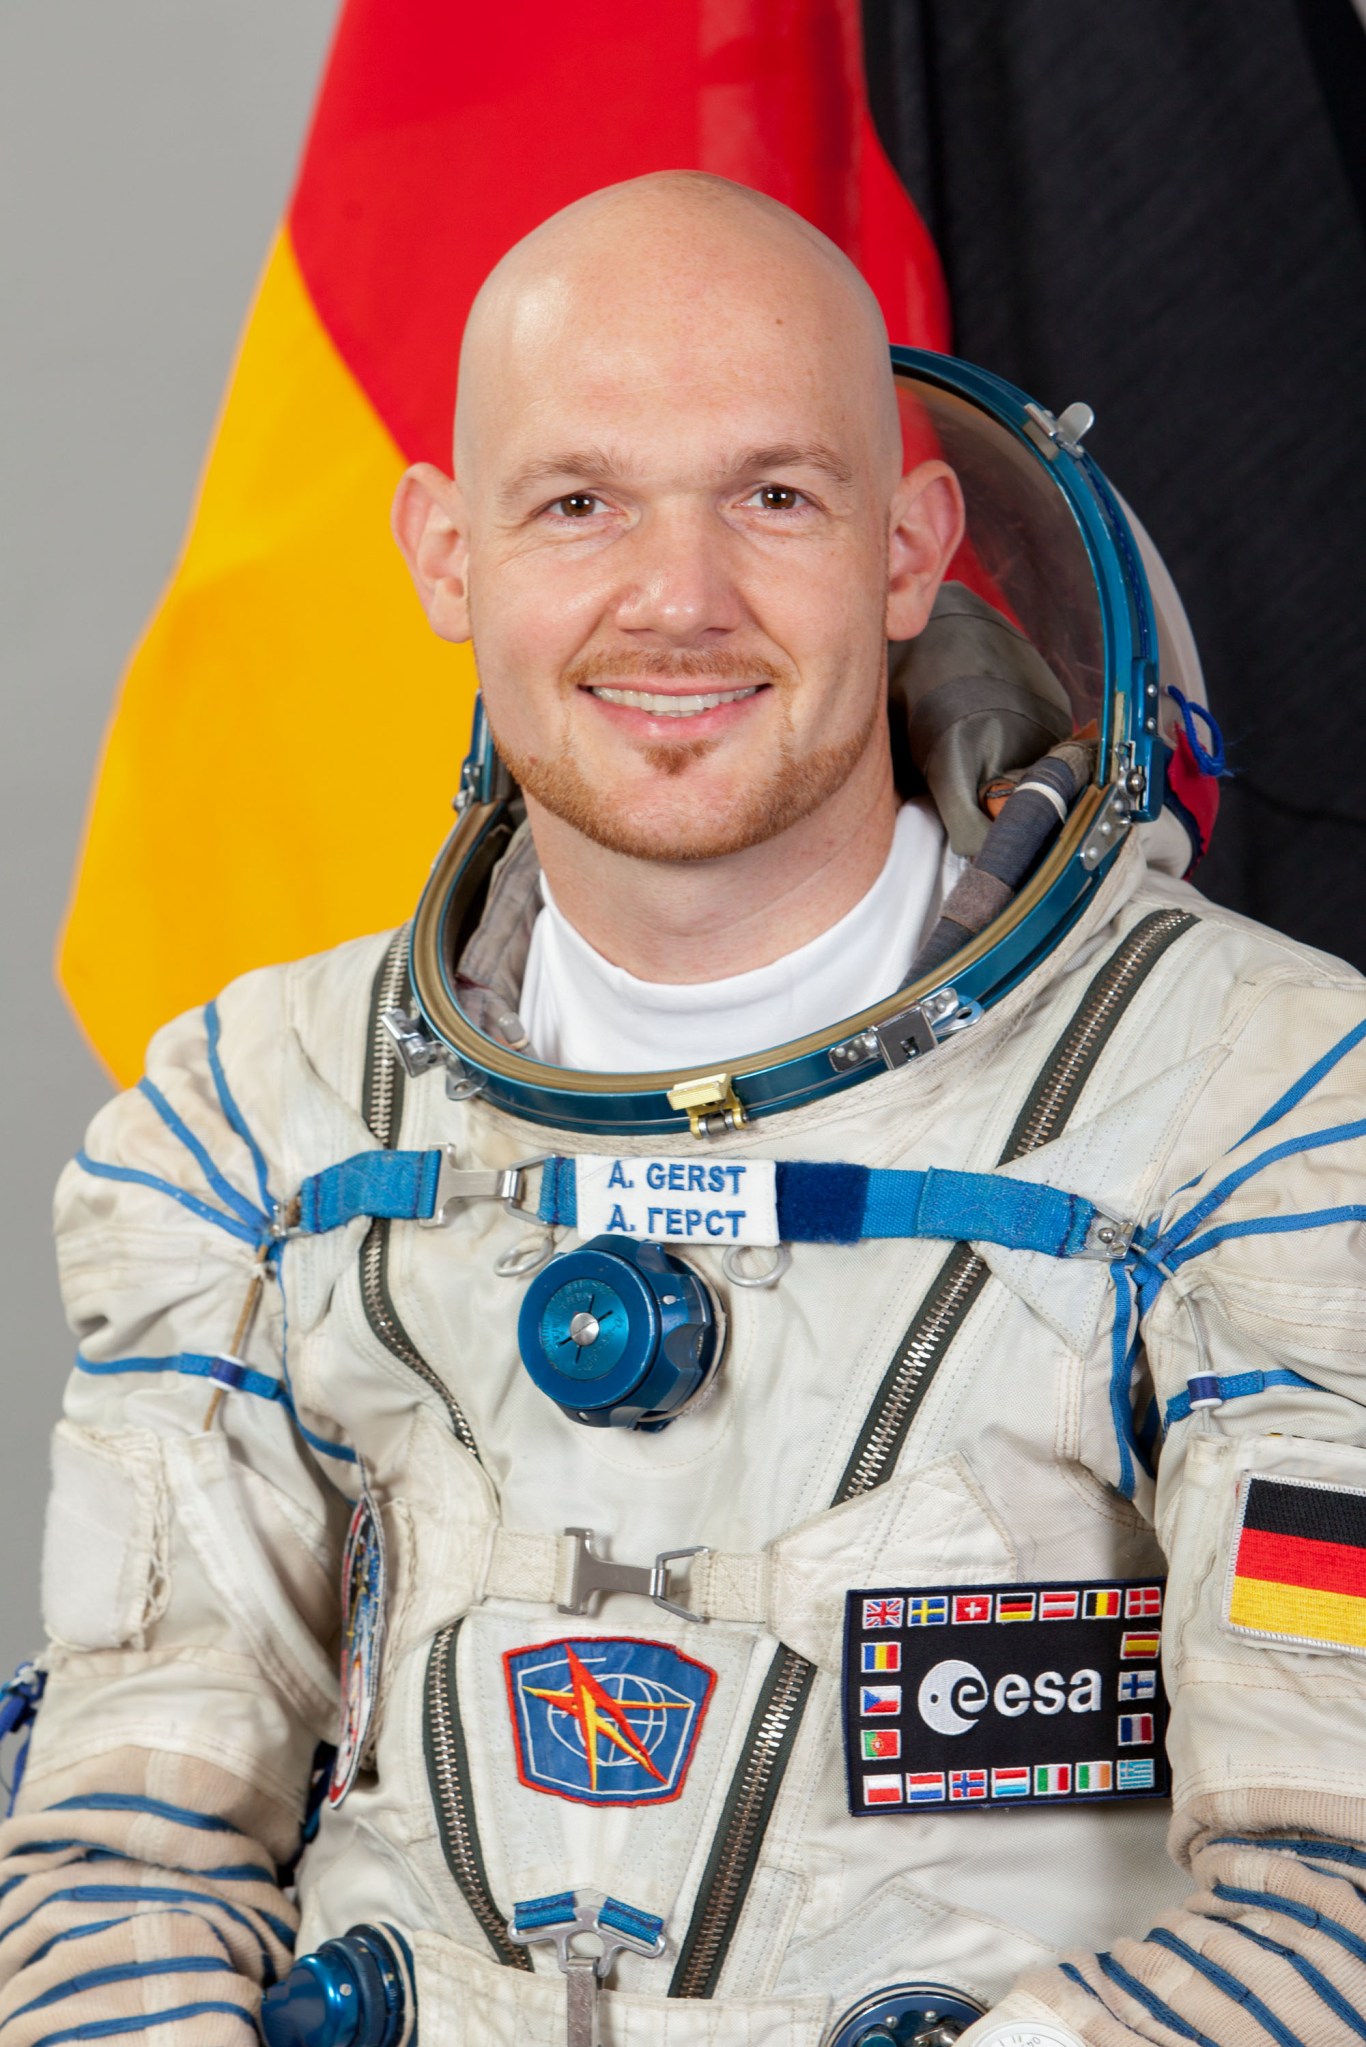 Astronaut Alexander Gerst of ESA